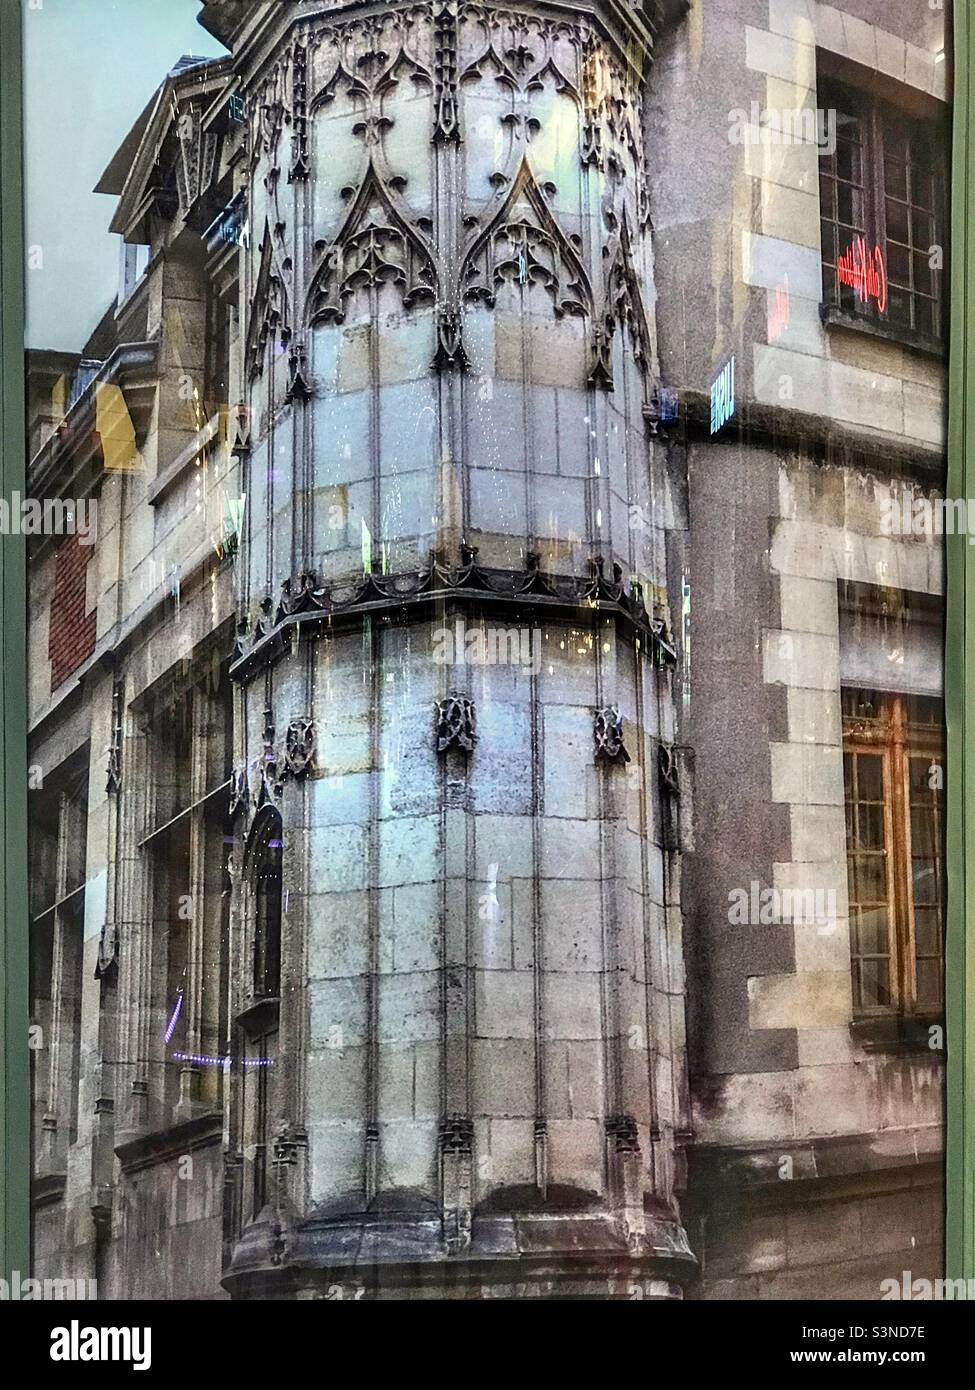 Struttura ad angolo di strada parigina che caratterizza l'architettura che definisce la capitale francese di Parigi. Foto Stock